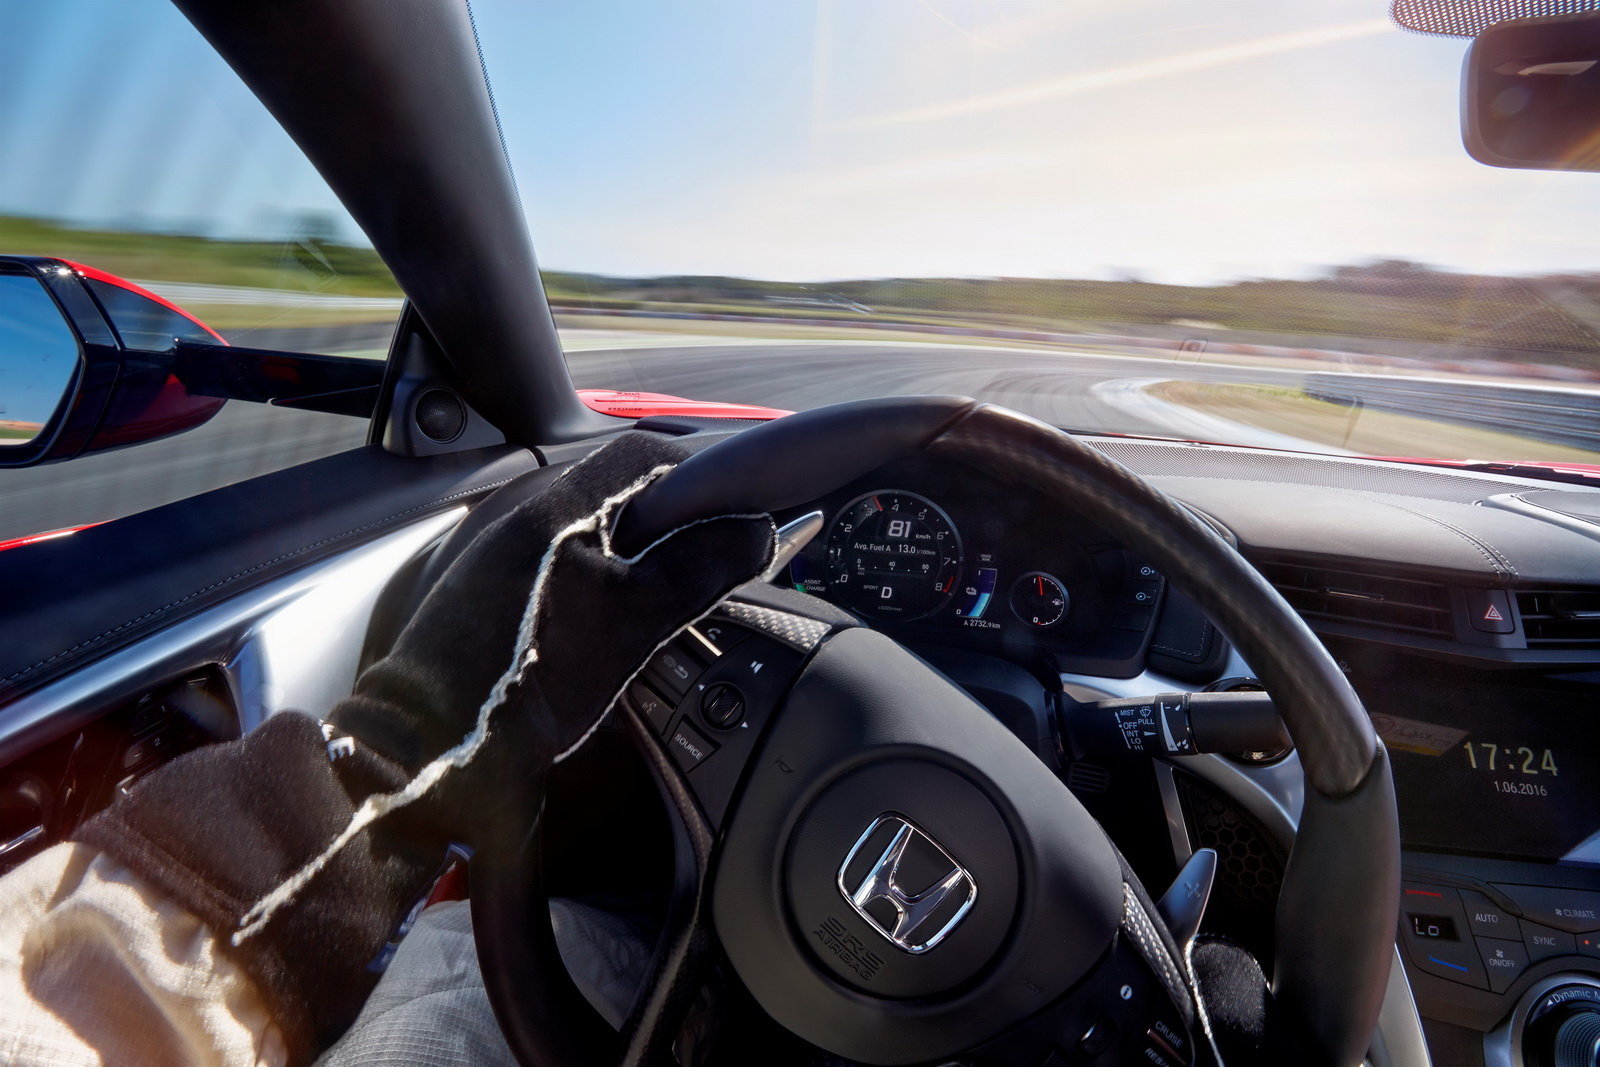 Nová Honda NSX s hybridním pohonným ústrojím přichází do celkem osmi evropských showroomů.